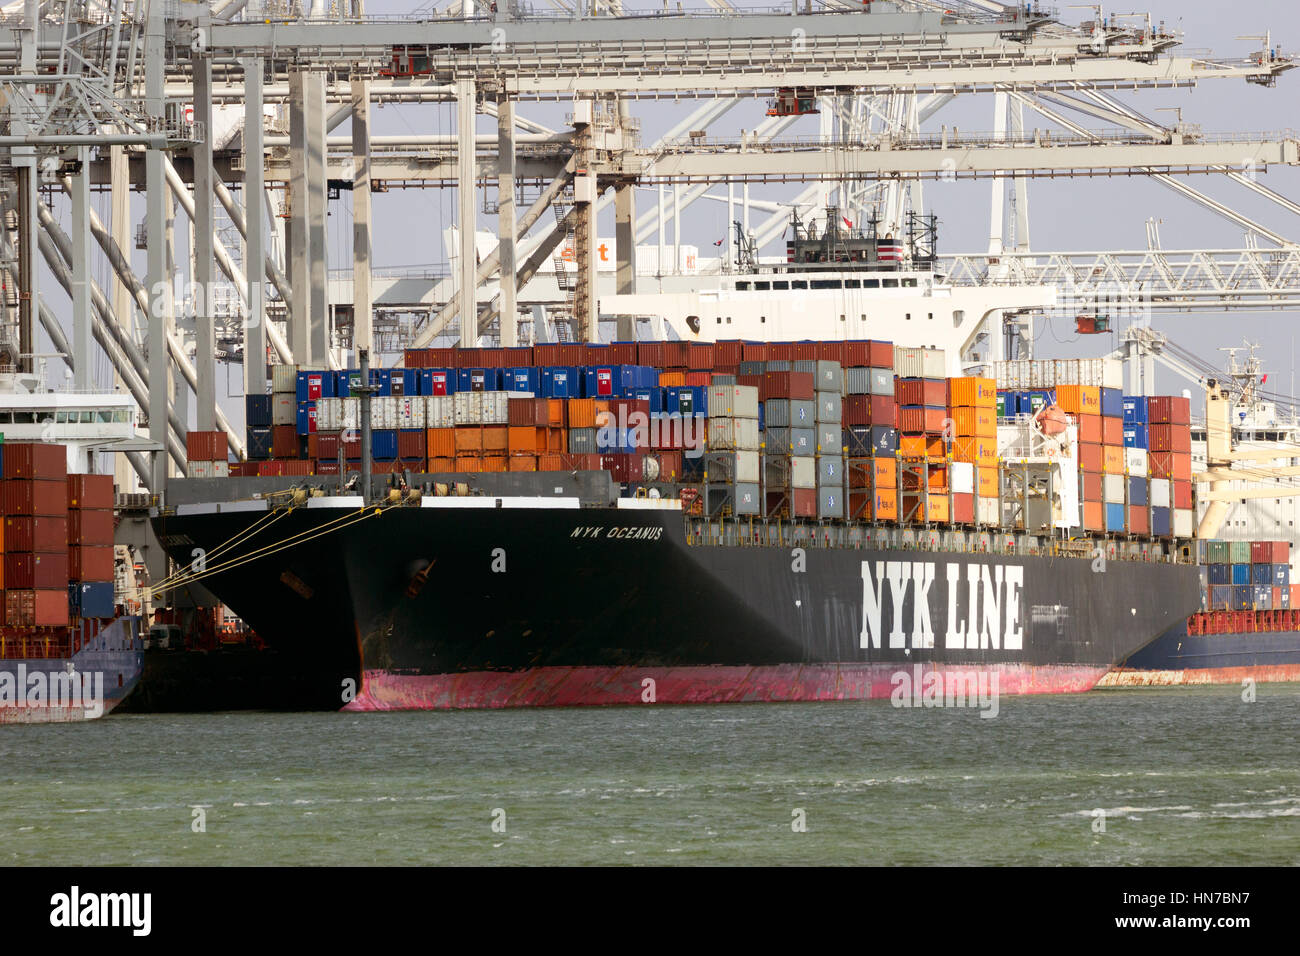 ROTTERDAM, Niederlande - 16. März 2016: Meer Containerschiff Nyk Oceanus von NYK Line in ECT Container-terminal im Hafen von Rotterdam festgemacht. Stockfoto